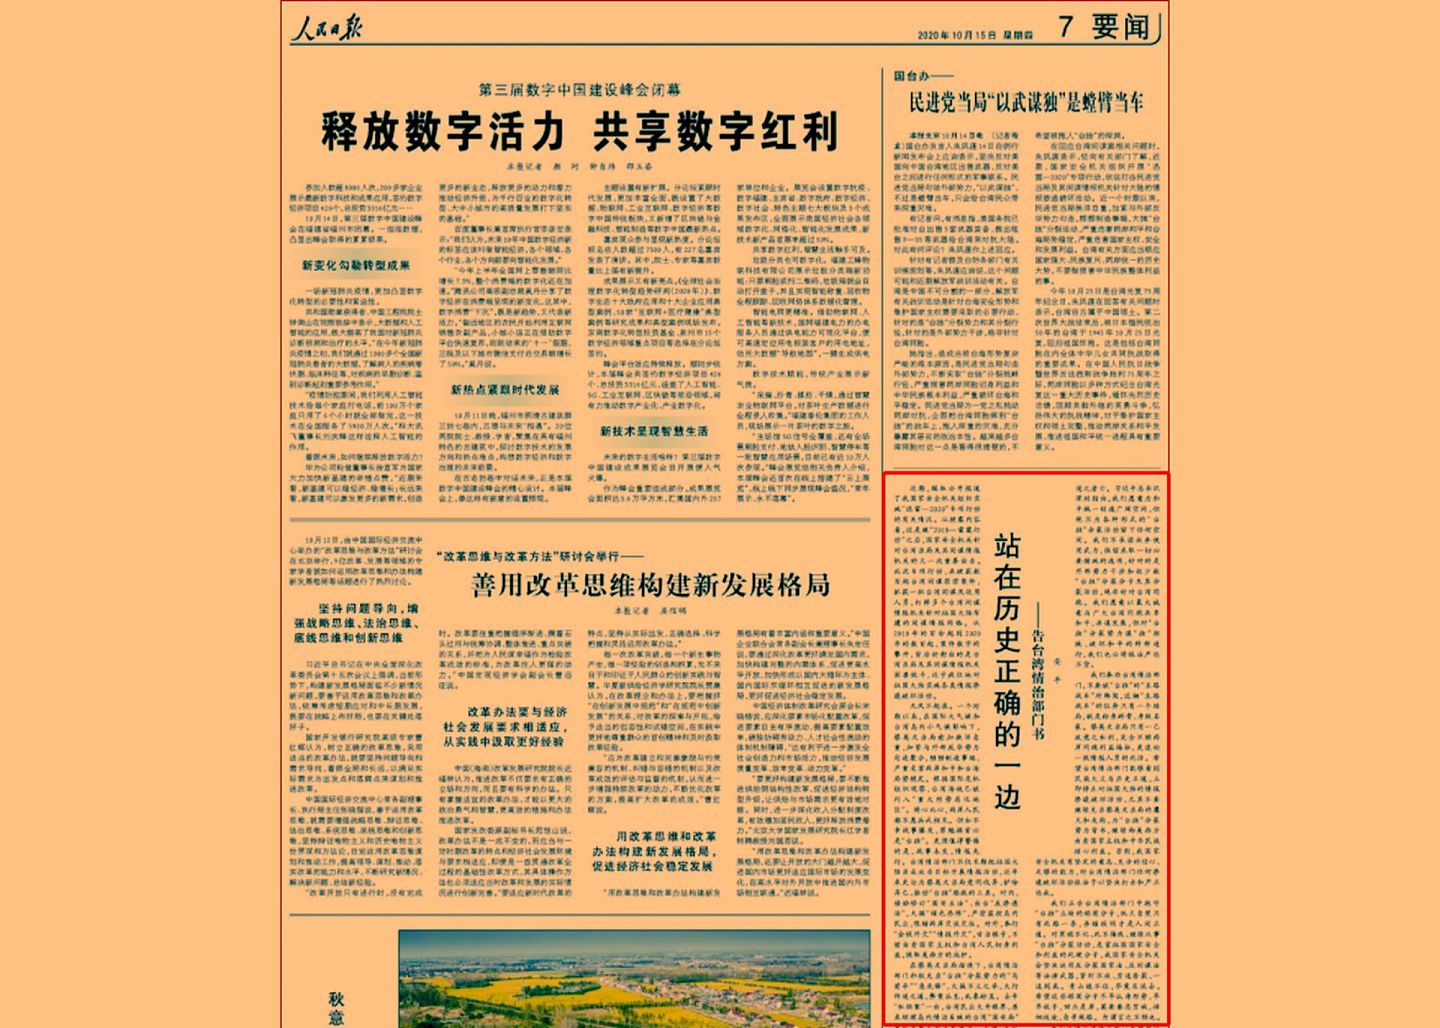 2020年10月15日，《人民日报》第7版发表文章《站在历史正确的一边——告台湾情治部门书》，提出“勿谓言之不预也”。（人民日报电子版截图）